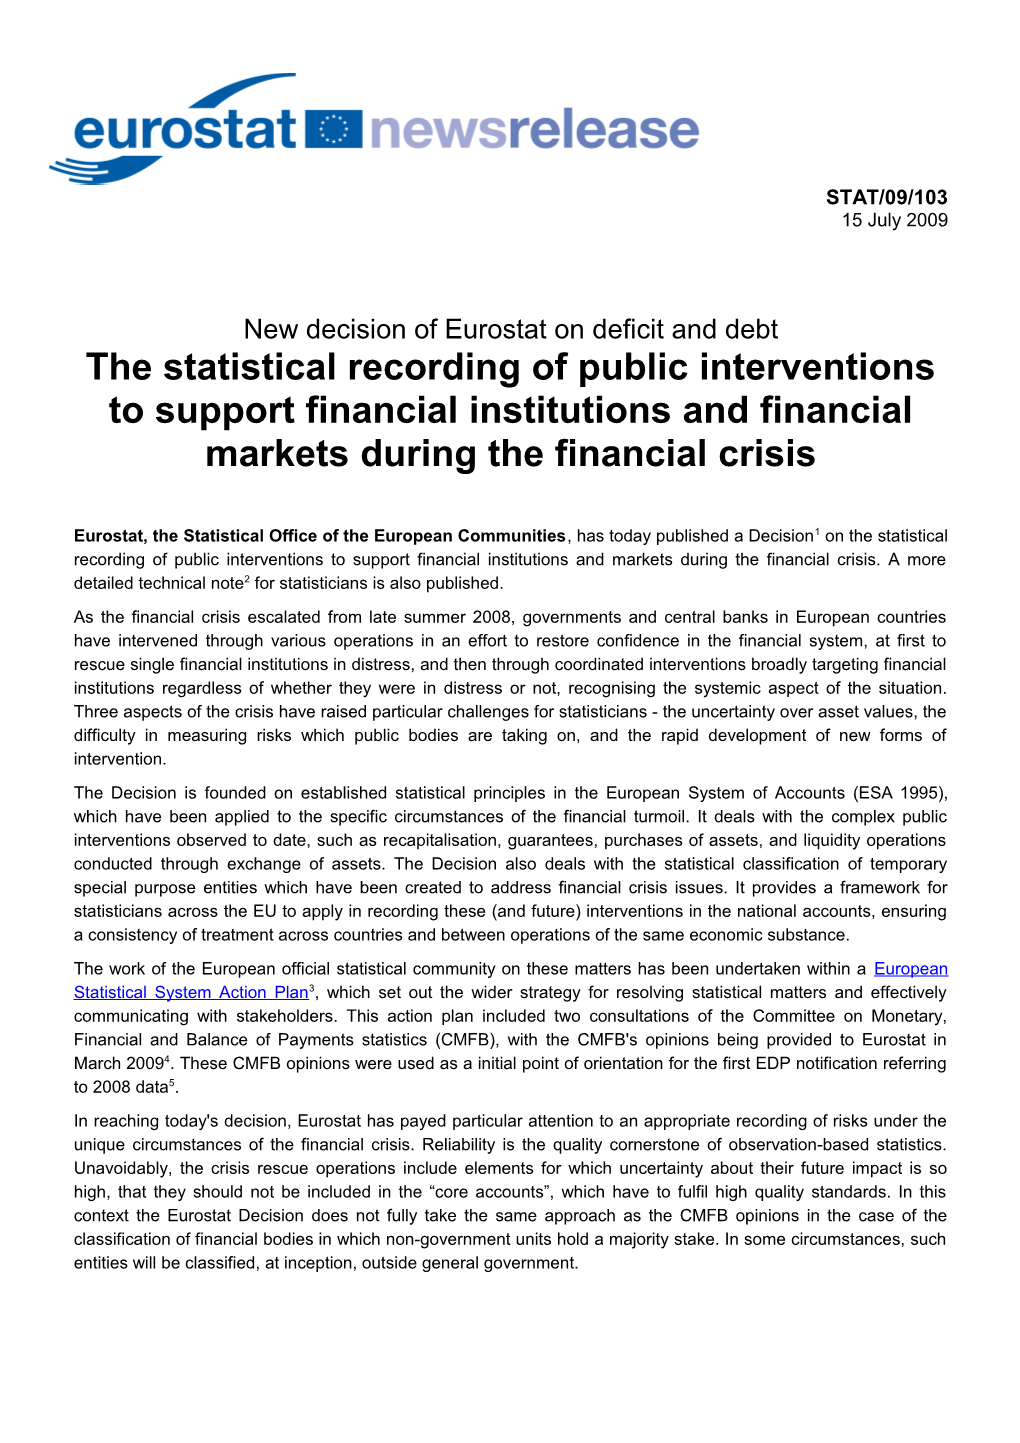 Eurostat News Release